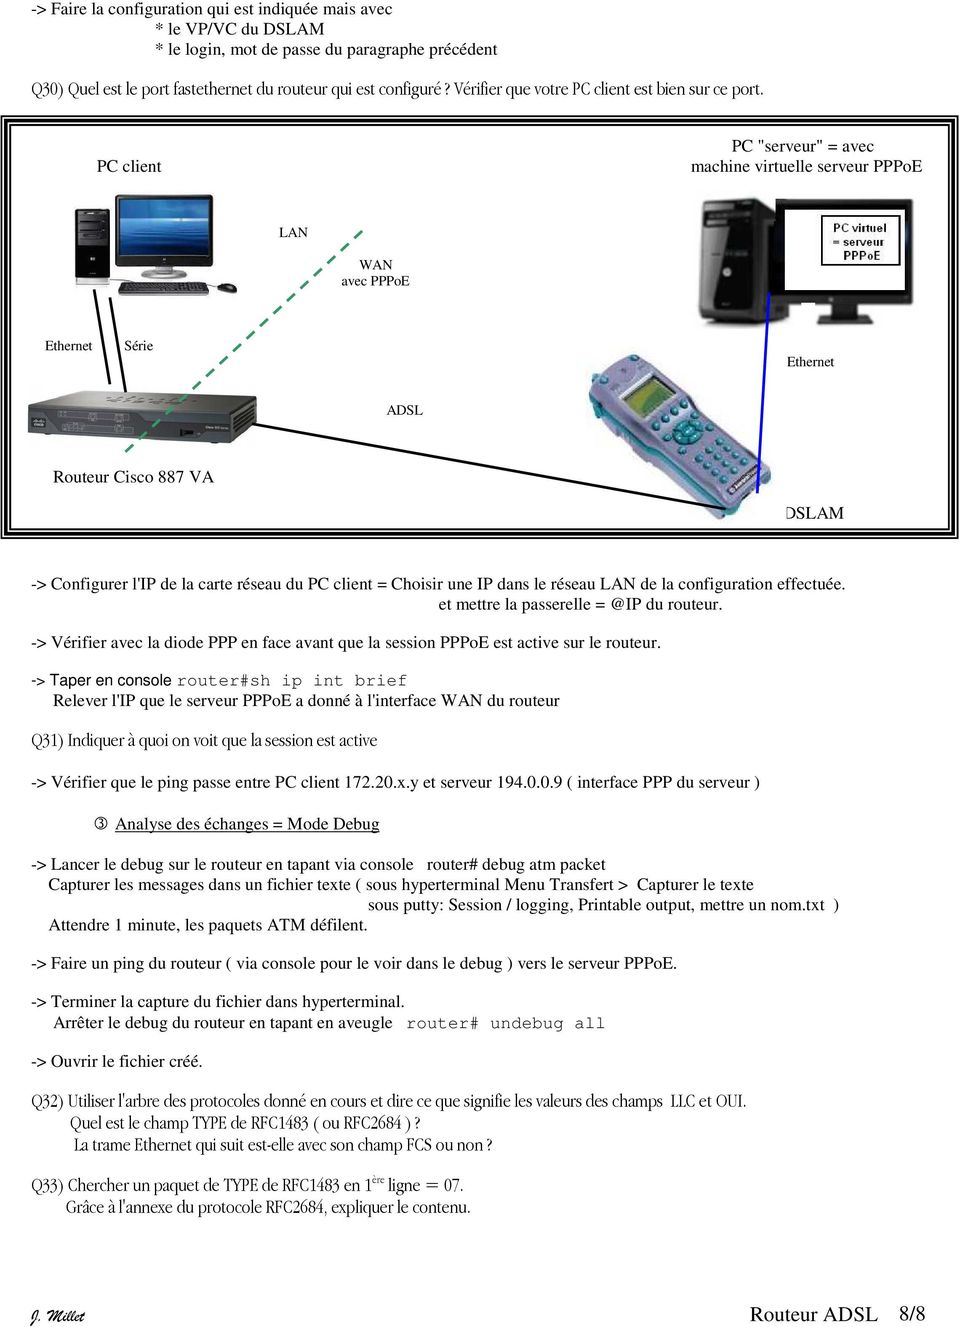 PC client PC "serveur" = avec machine virtuelle serveur PPPoE LAN WAN avec PPPoE Ethernet Série Ethernet ADSL Routeur Cisco 887 VA DSLAM -> Configurer l'ip de la carte réseau du PC client = Choisir